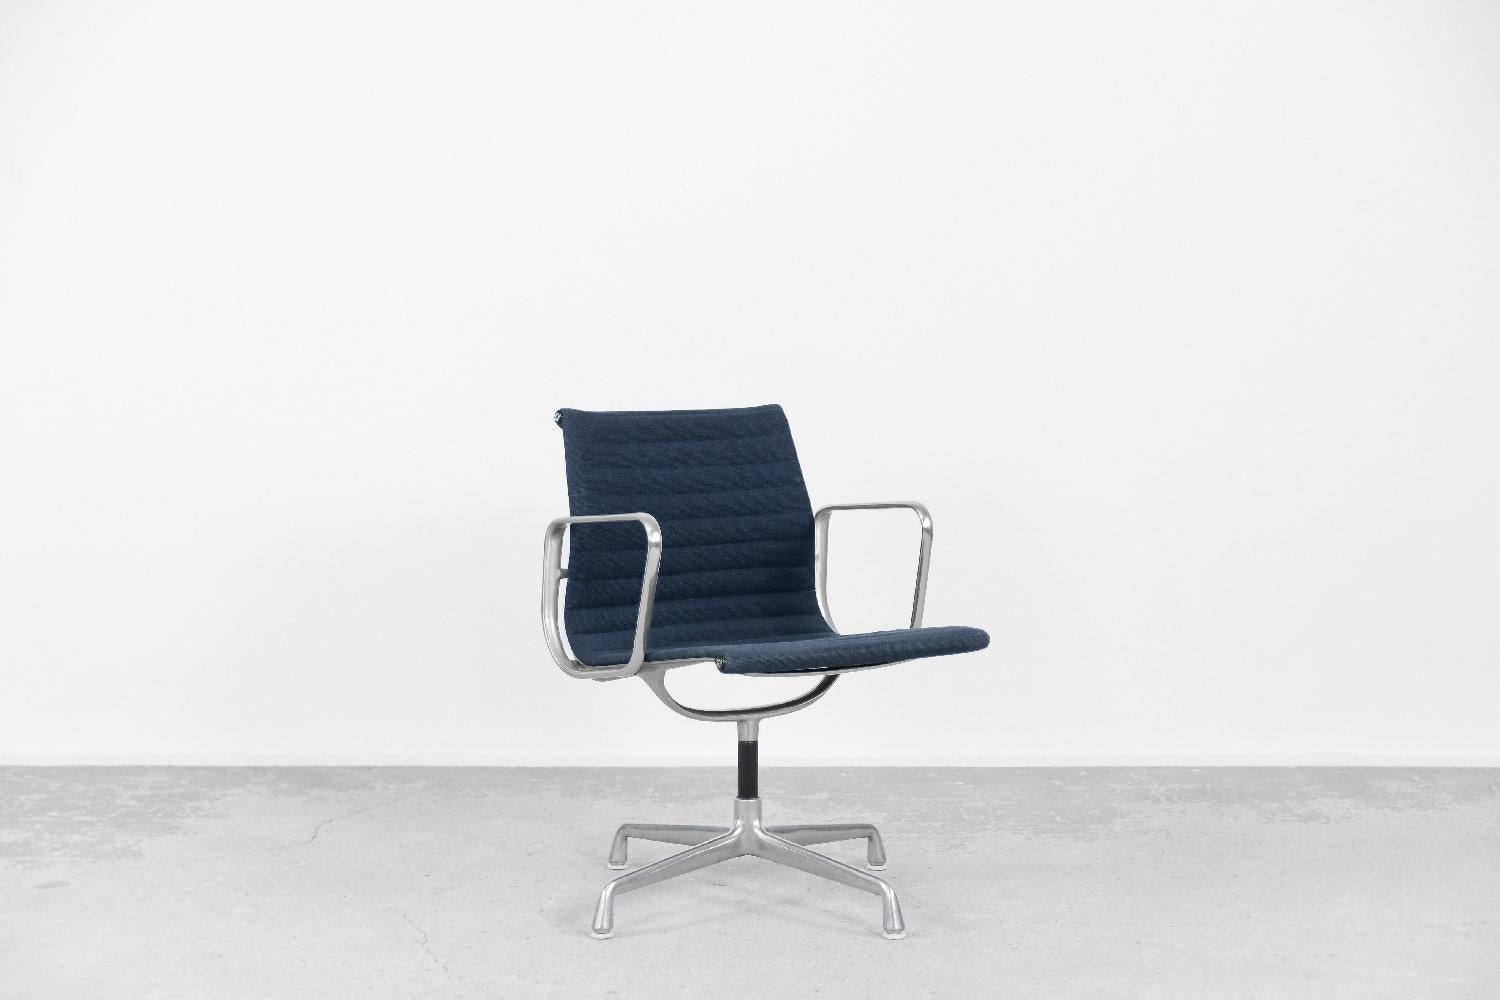 Dieser Stuhl EA 108 wurde 1958 von Charles & Ray Eames entworfen und vom amerikanischen Hersteller Herman Miller produziert. Dieser Stuhl ist drehbar und mit dem Herman Miller-Zeichen, Nummer 938-138, gekennzeichnet. Vollständig originales Stück.